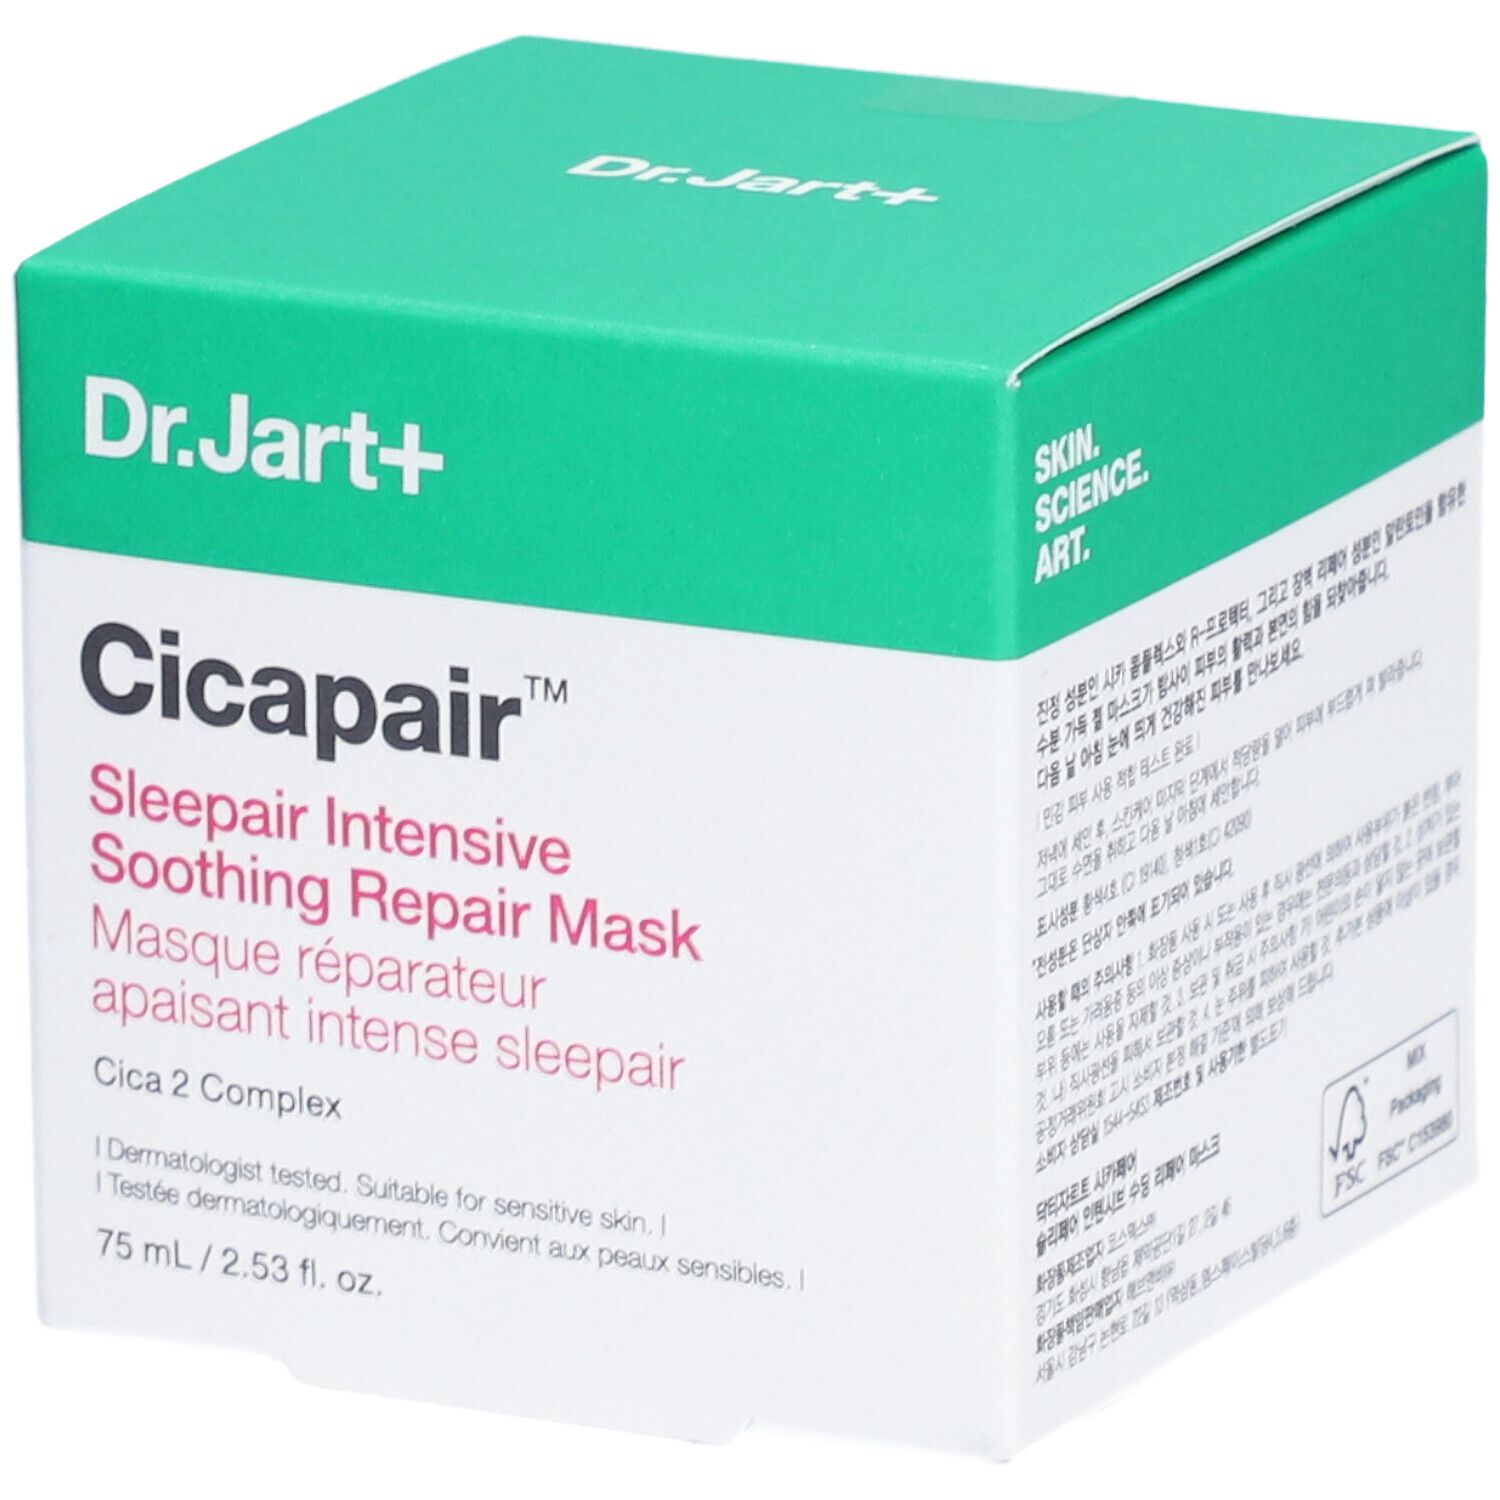 Dr.Jart+ CICAPAIR™ Sleepair Intensive Soothing Repair Mask - anti redness